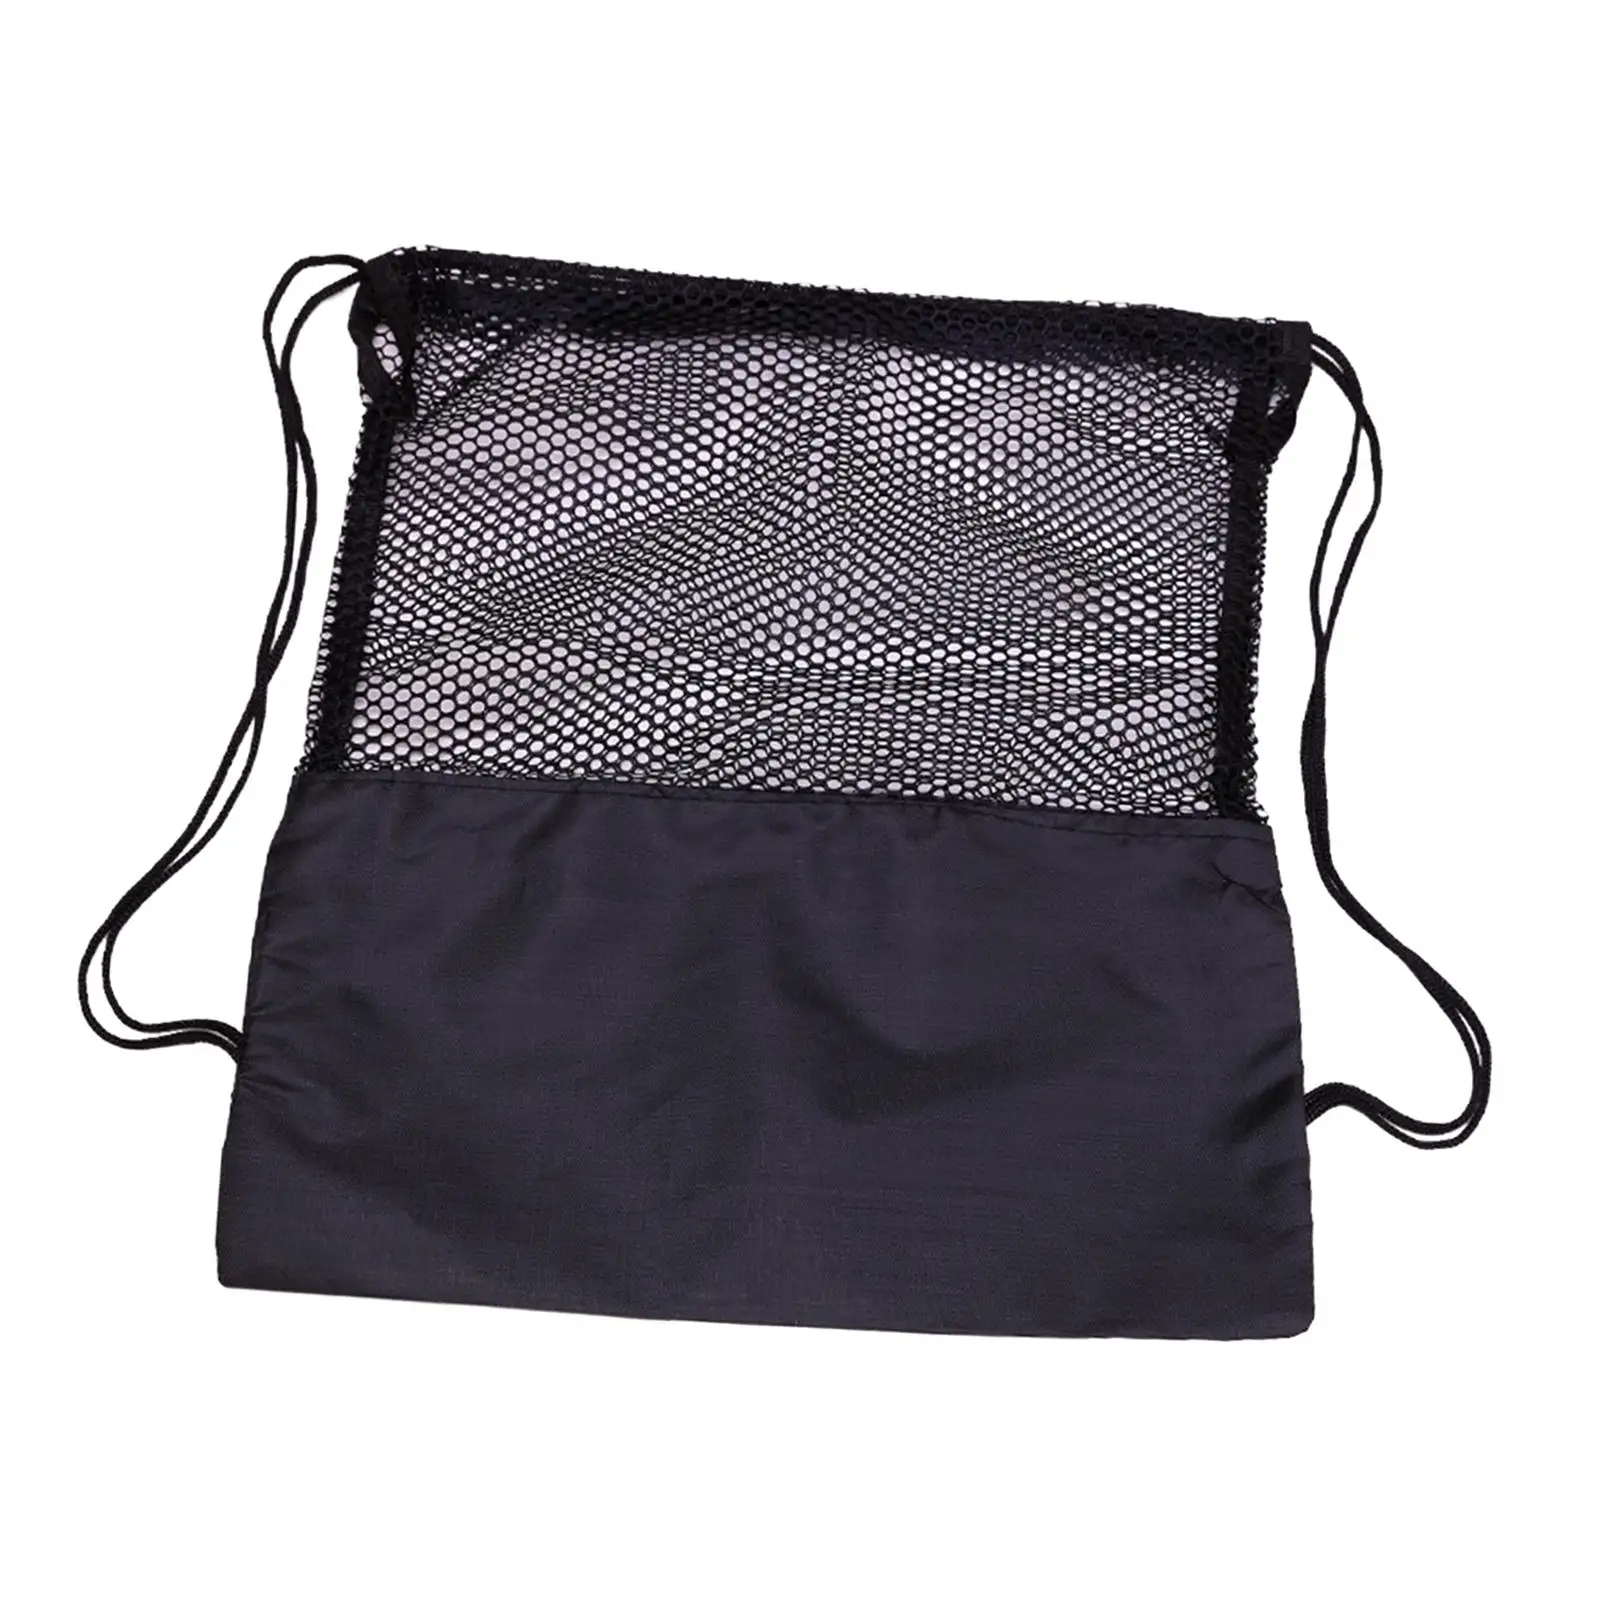 Drawstring Backpack Casual Day Pack Sports Gym Bag Basketball Shoulder Bag Drawstring Bag for Dance Rugby Traveling Soccer Yoga